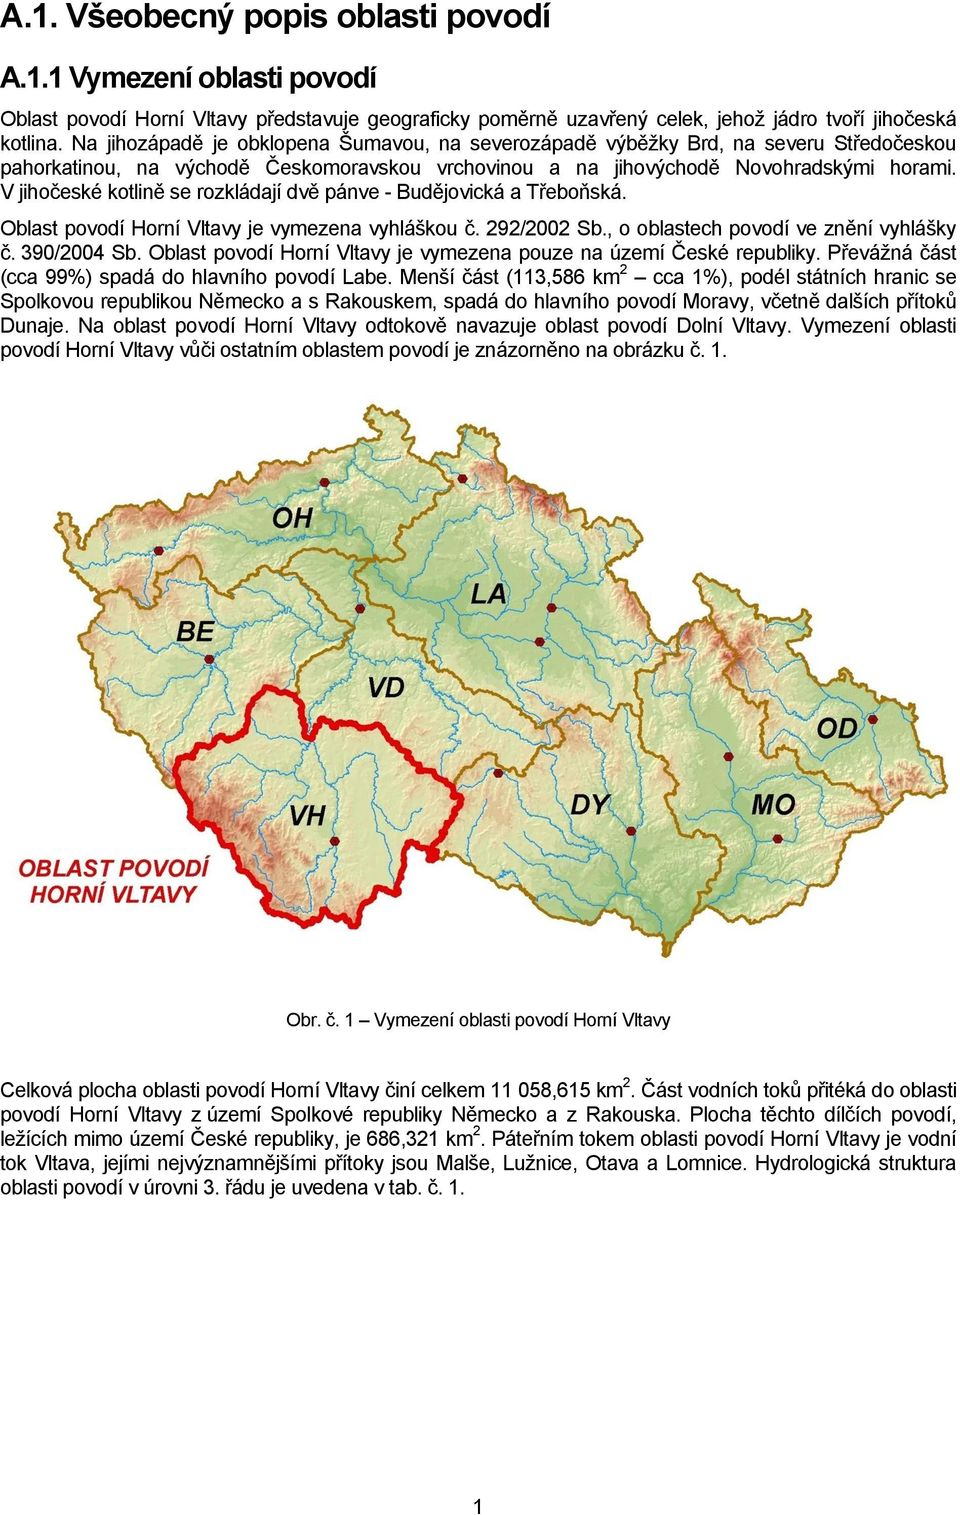 V jihočeské kotlině se rozkládají dvě pánve - Budějovická a Třeboňská. Oblast povodí Horní Vltavy je vymezena vyhláškou č. 292/2002 Sb., o oblastech povodí ve znění vyhlášky č. 390/2004 Sb.